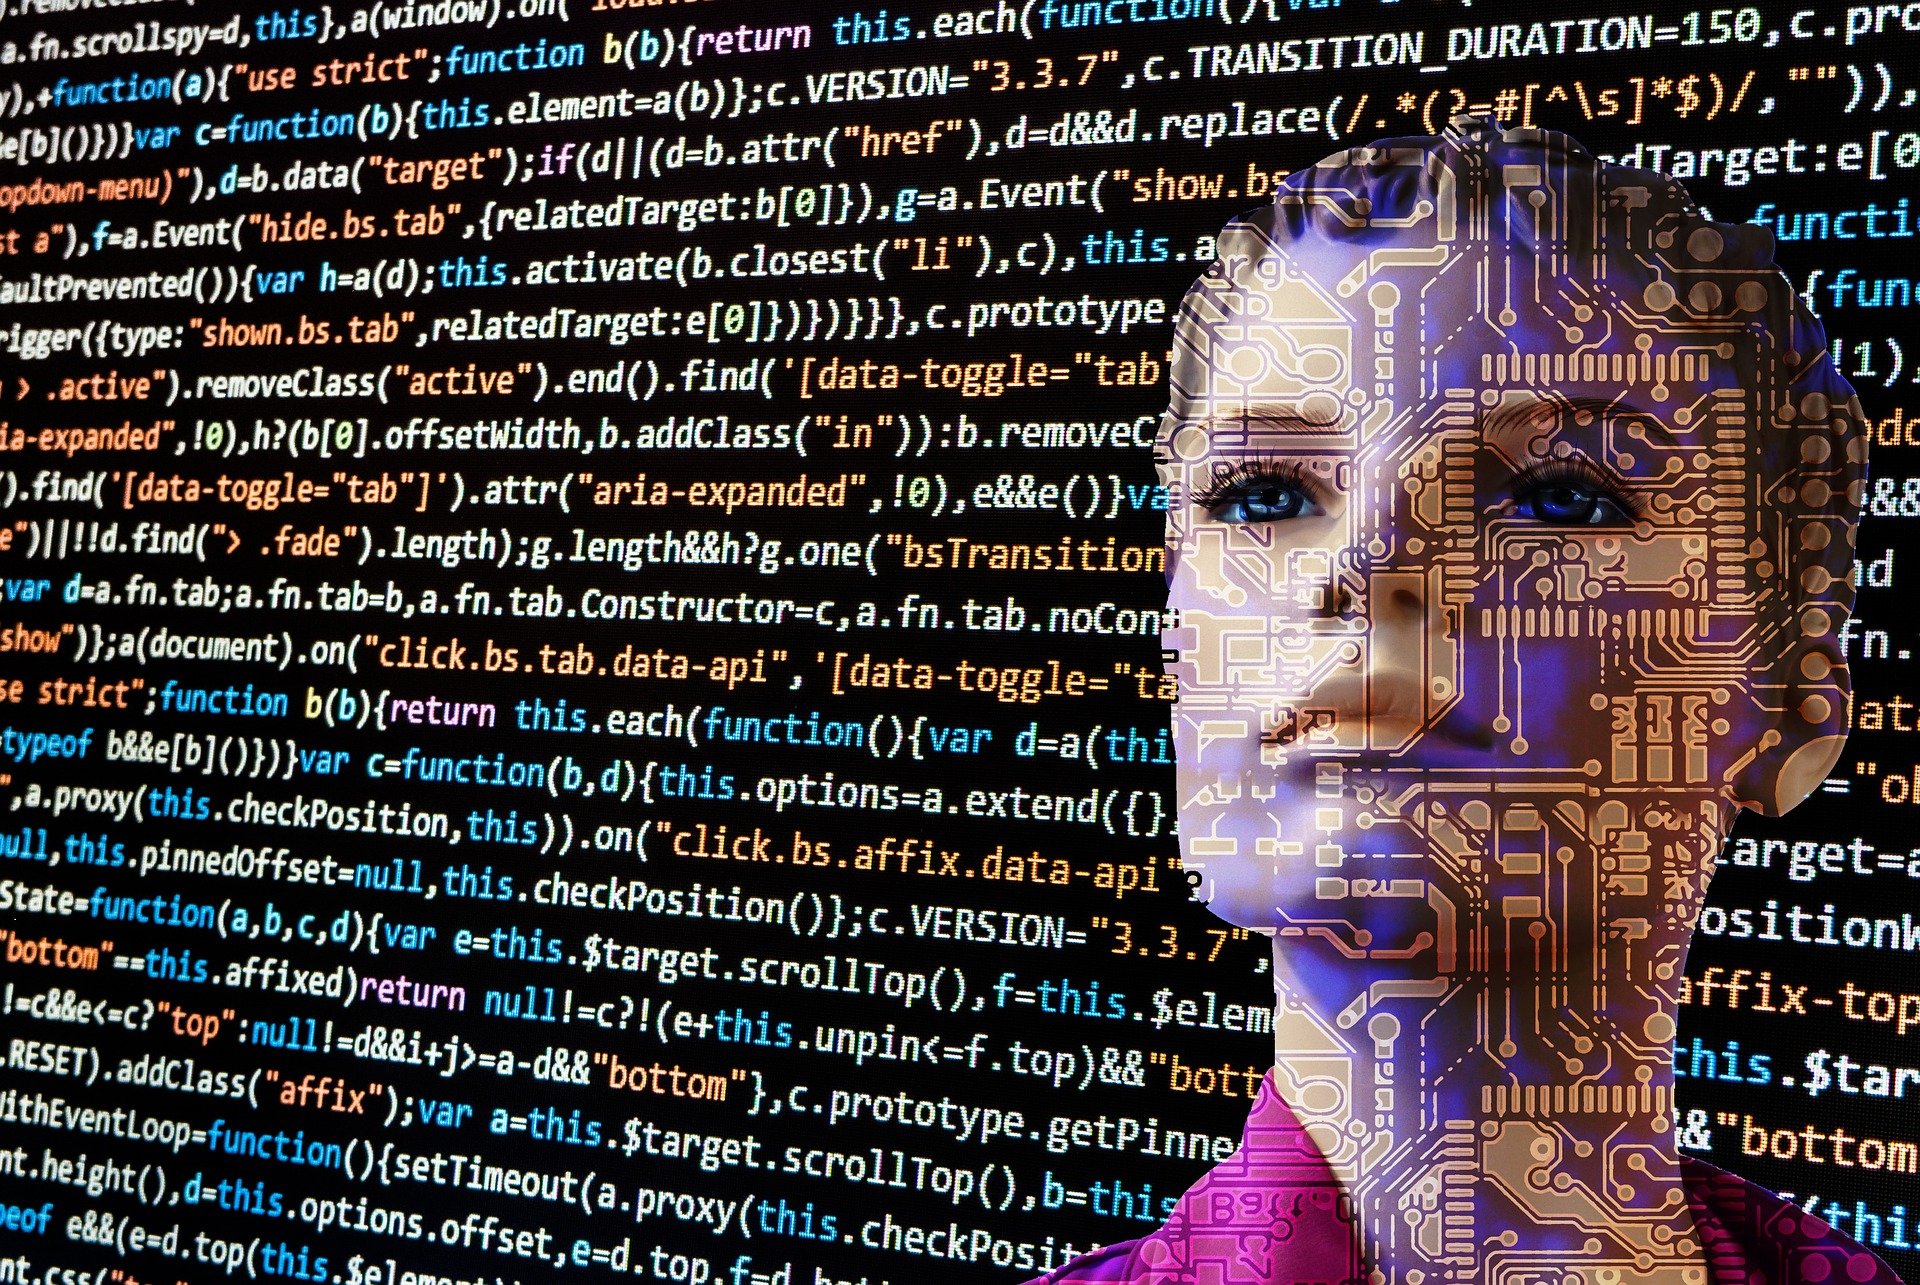 סדנת AI בינה מלאכותית: גוגל ג'מני (Google Gemini) וקו-פיילוט של מייקרוסופט (Microsoft Copilot)